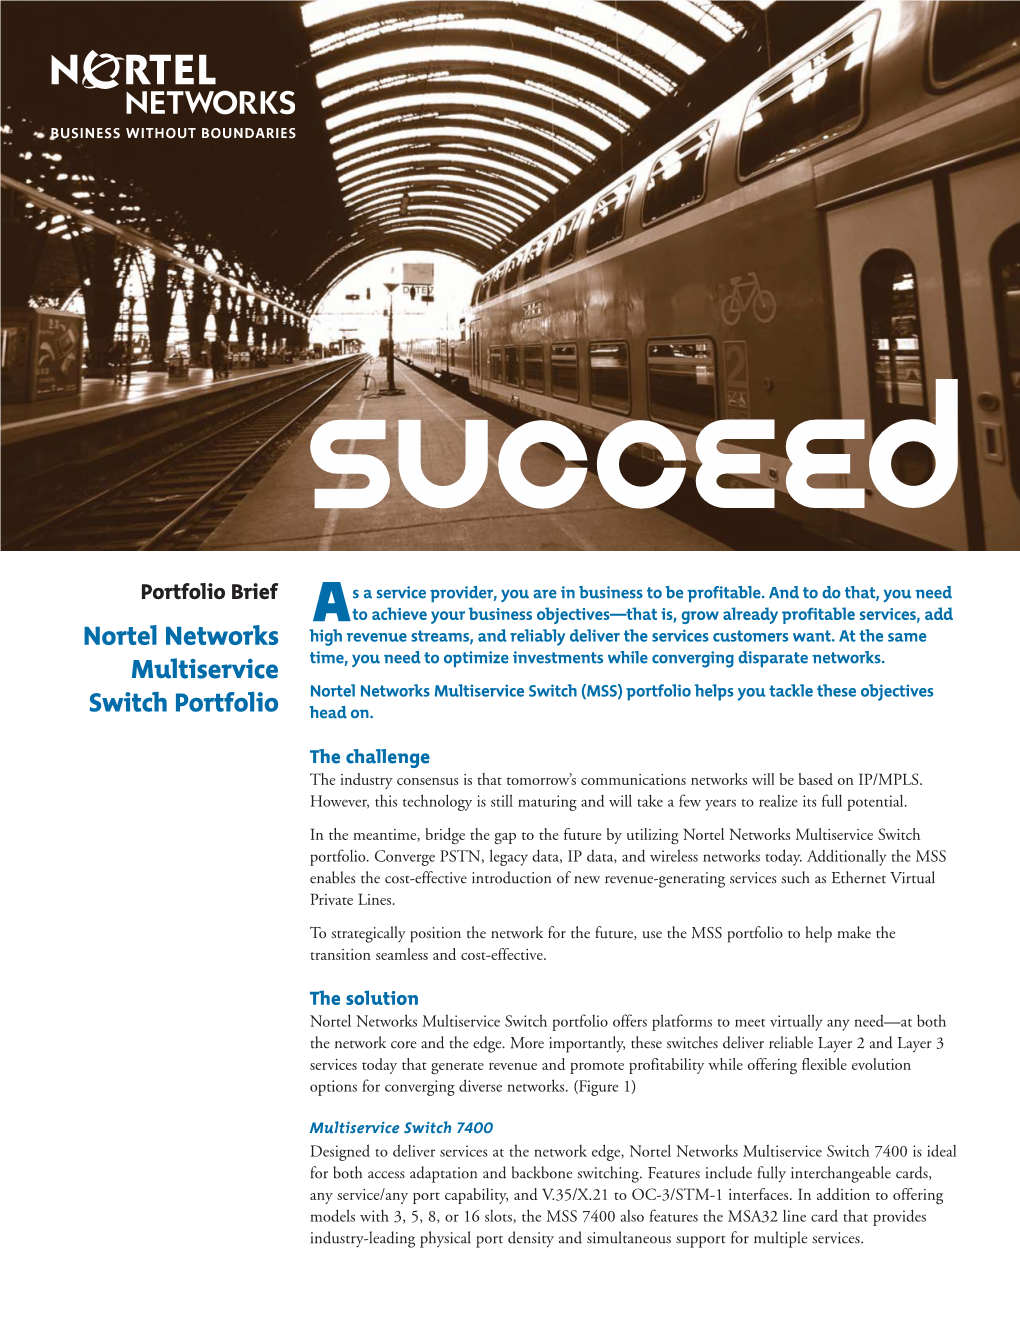 Nortel Networks Multiservice Switch Portfolio